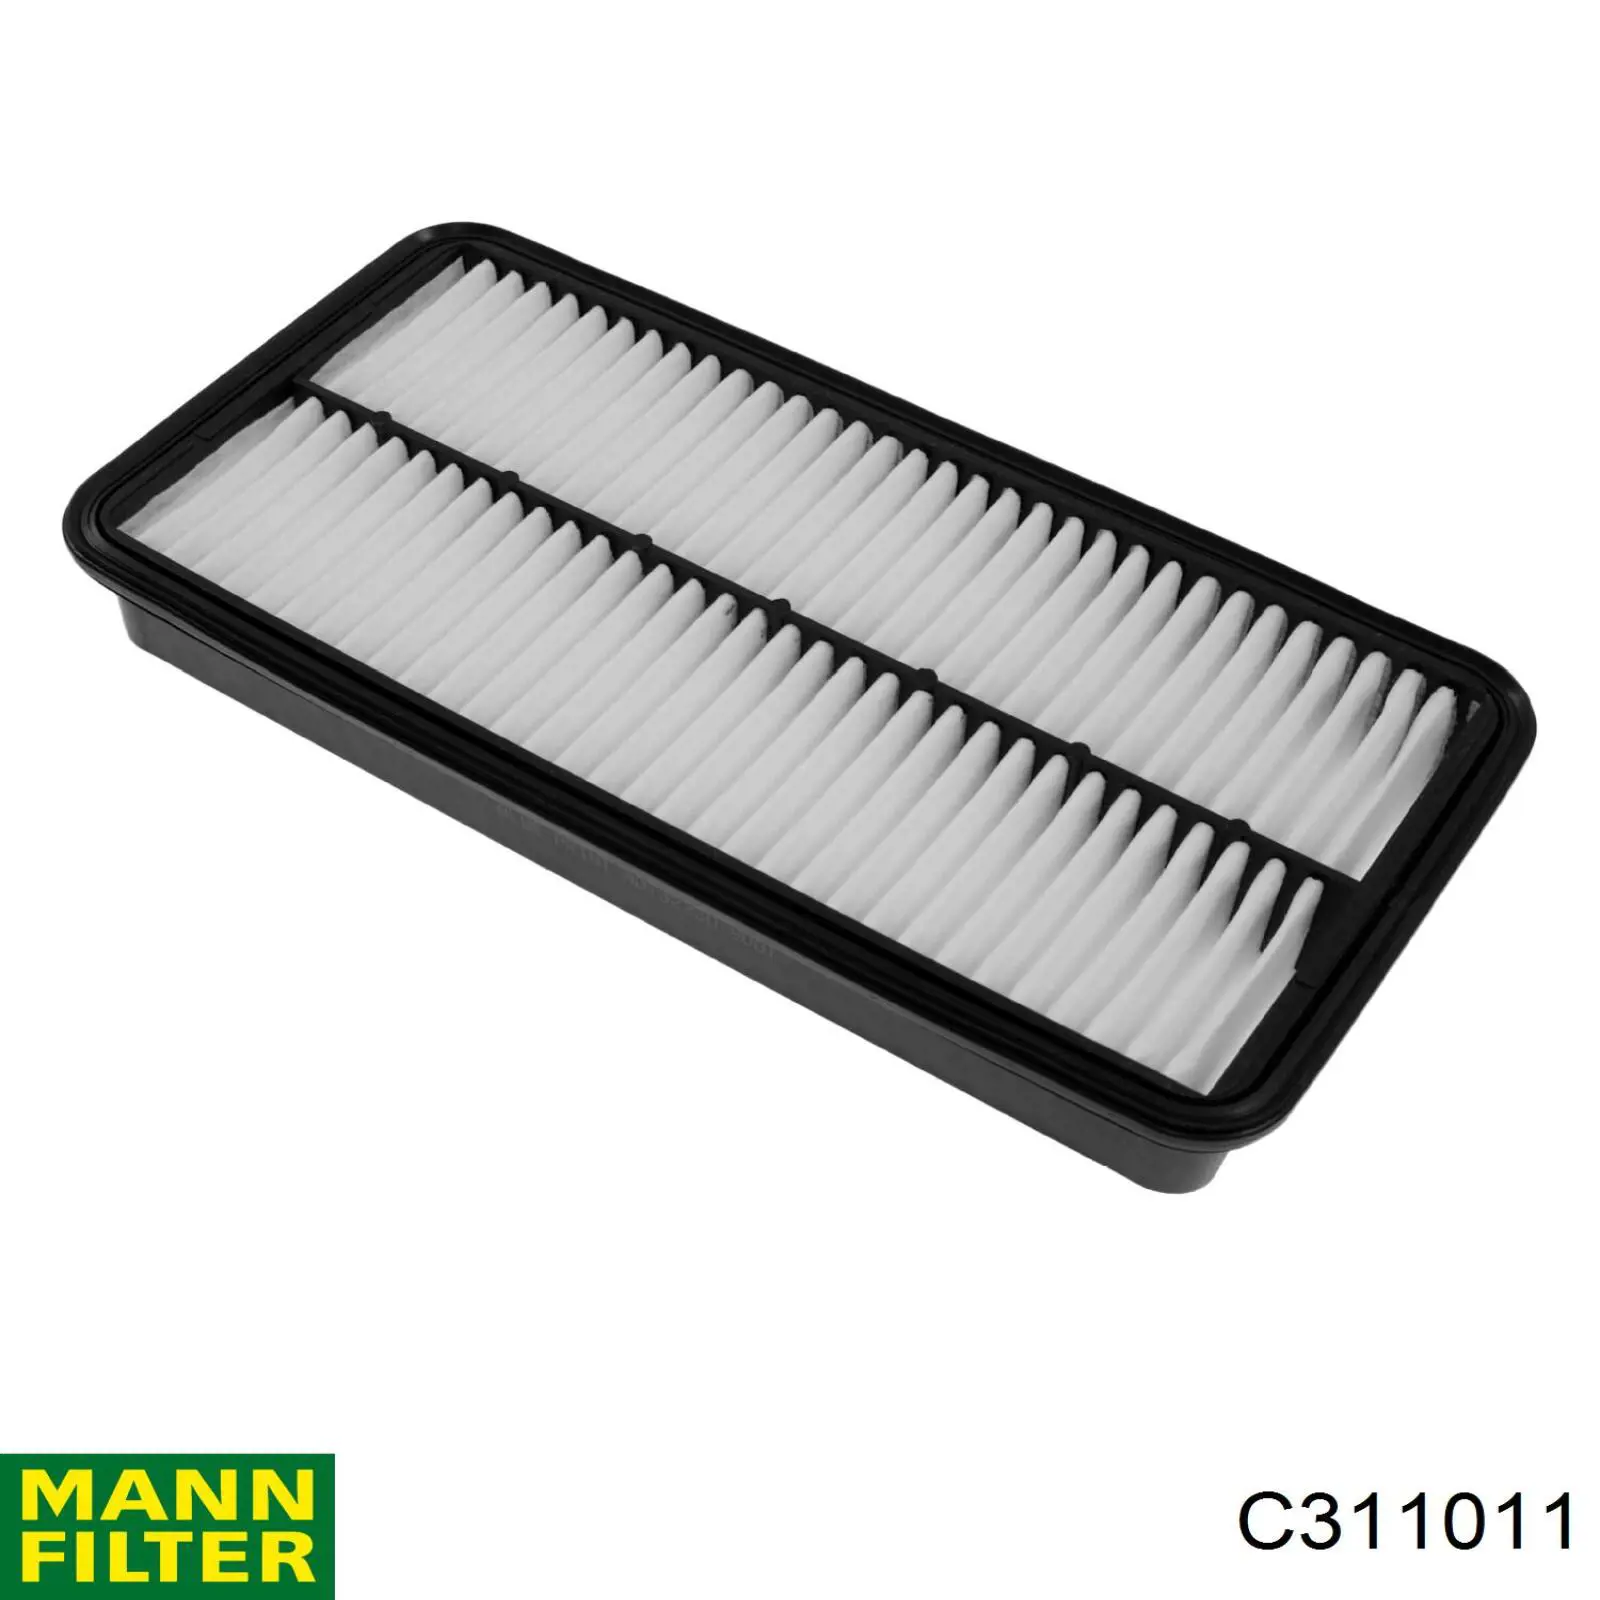 Filtro de aire C311011 Mann-Filter